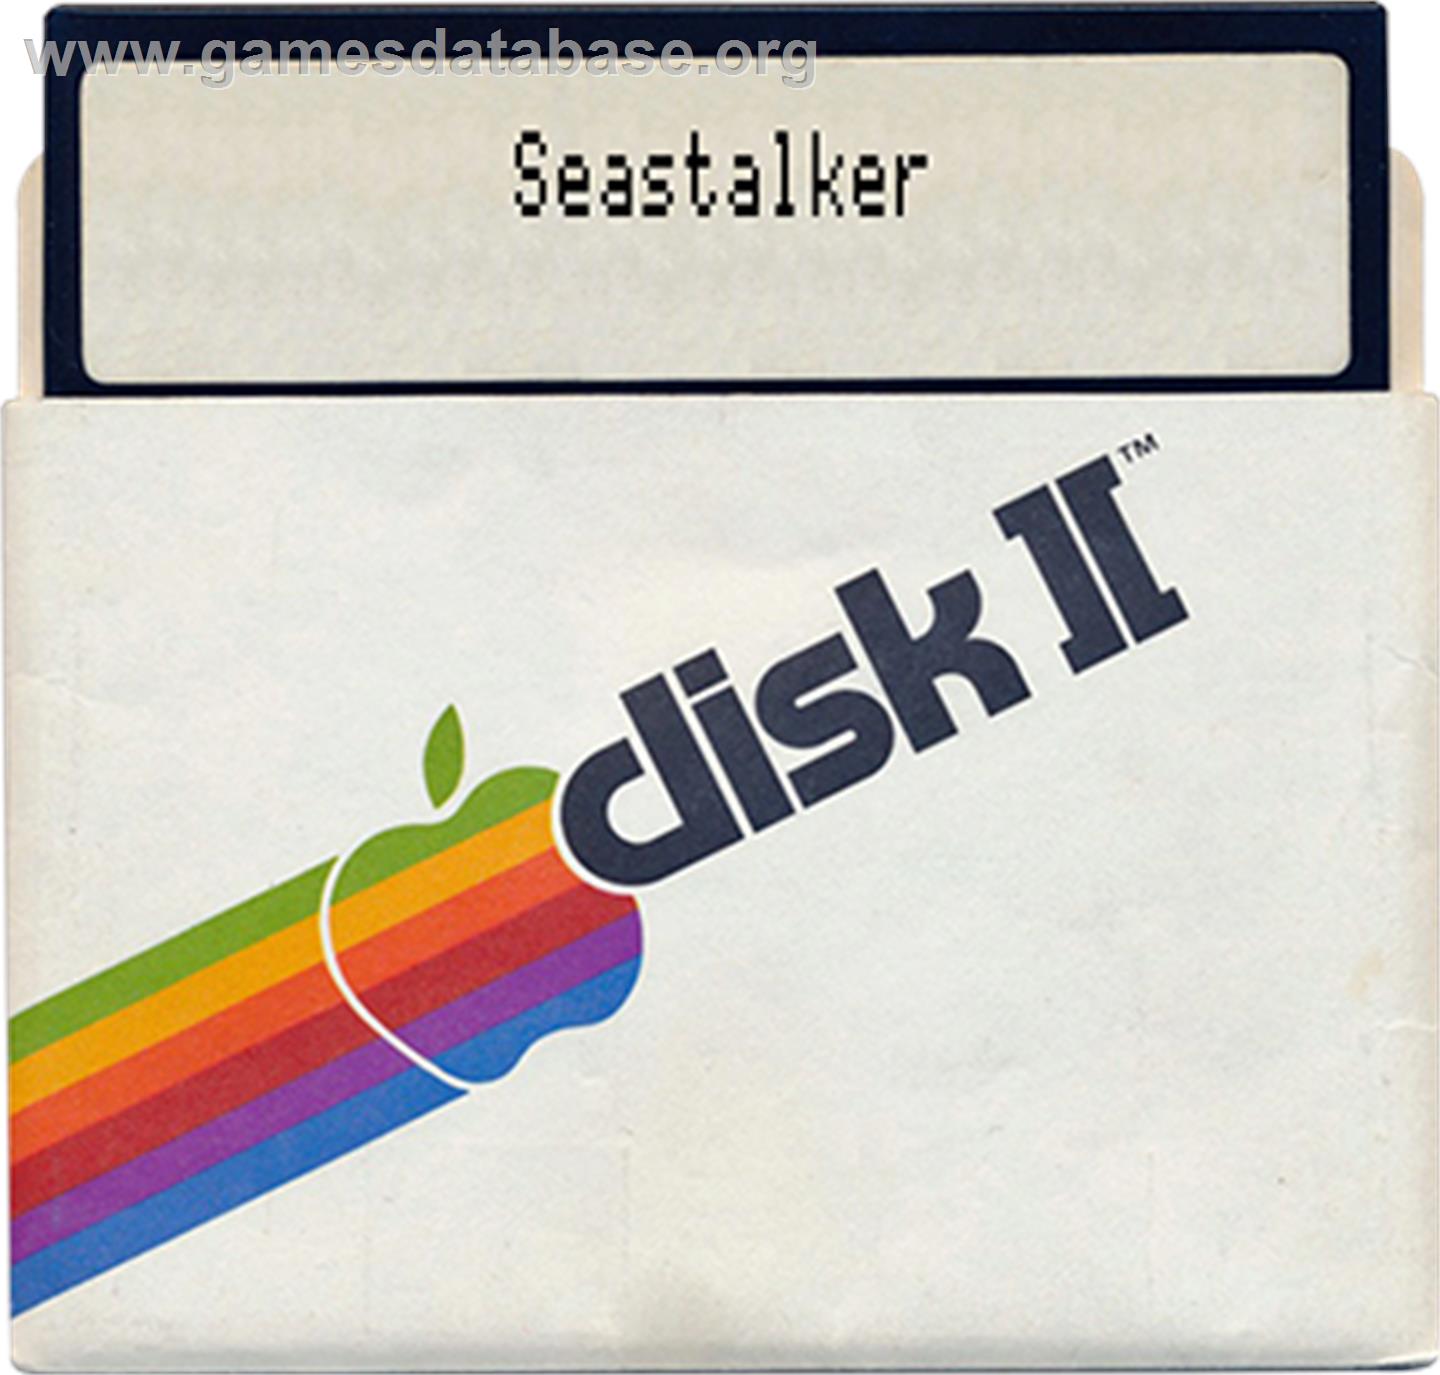 Seastalker - Apple II - Artwork - Disc